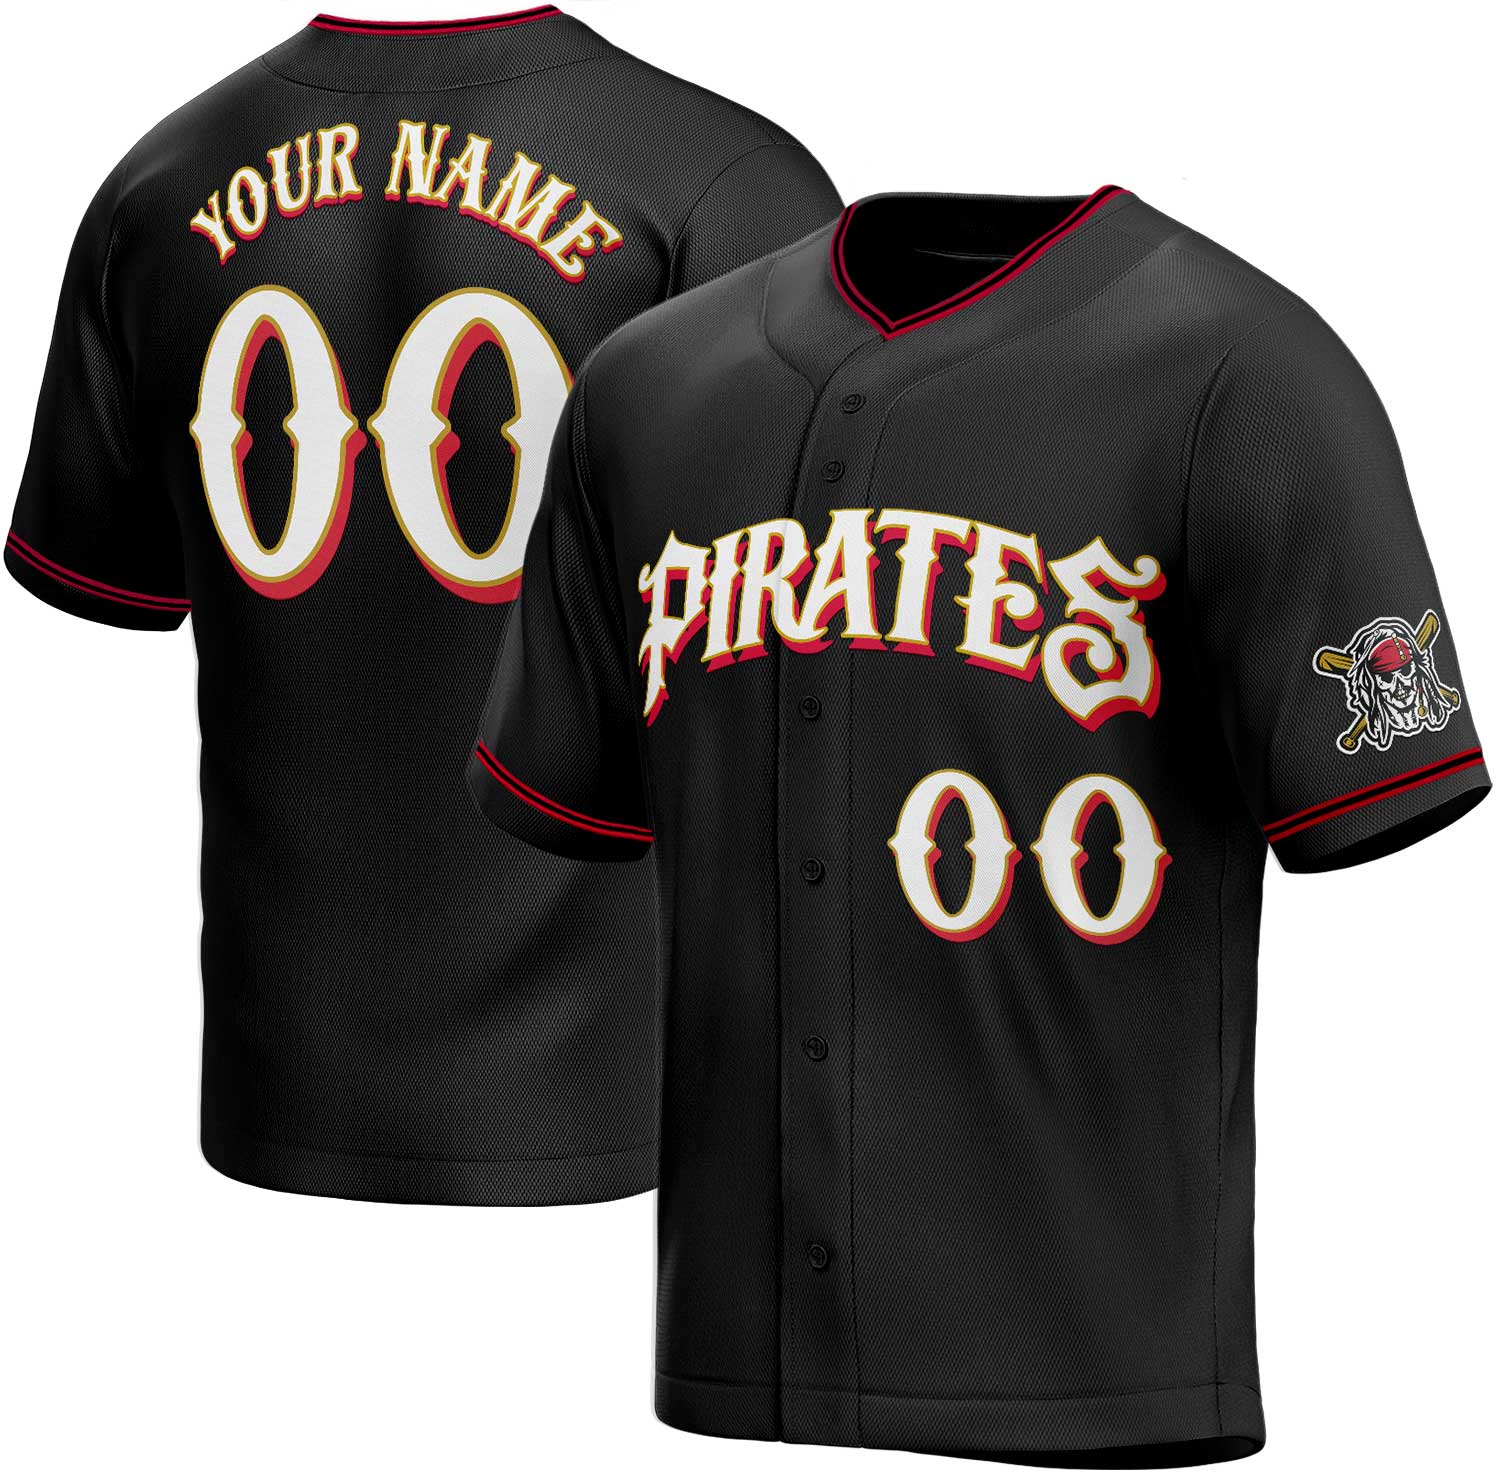 pirate baseball jersey